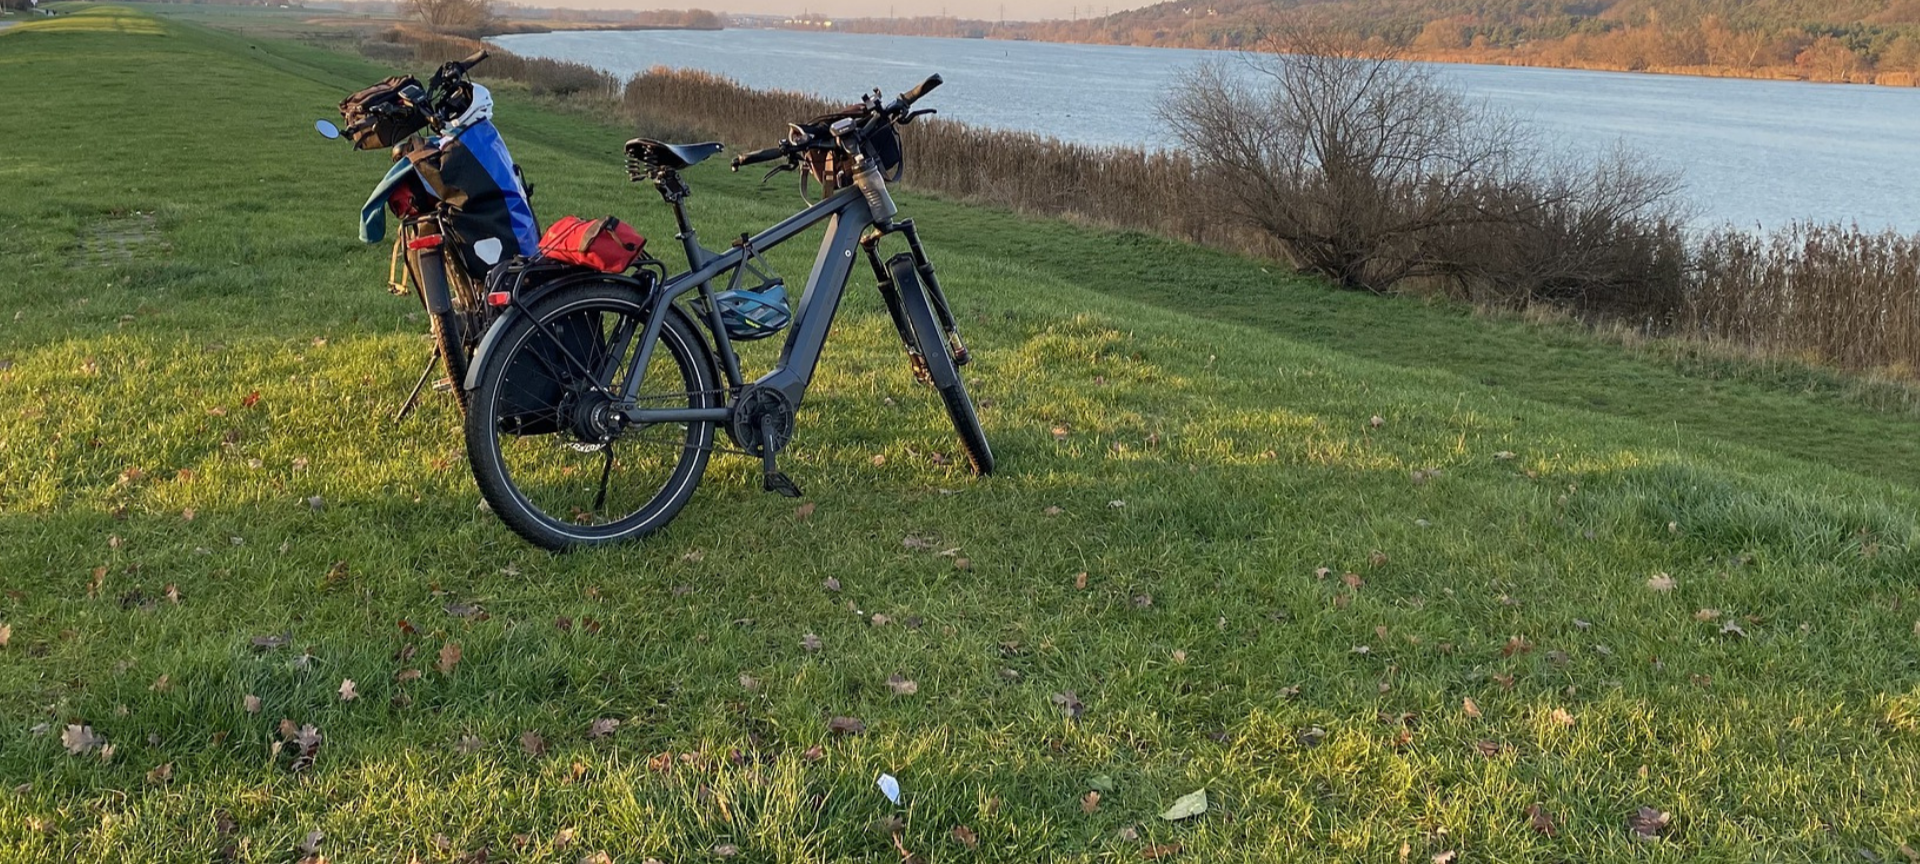 Vélo de voyage au bord d'une riviere